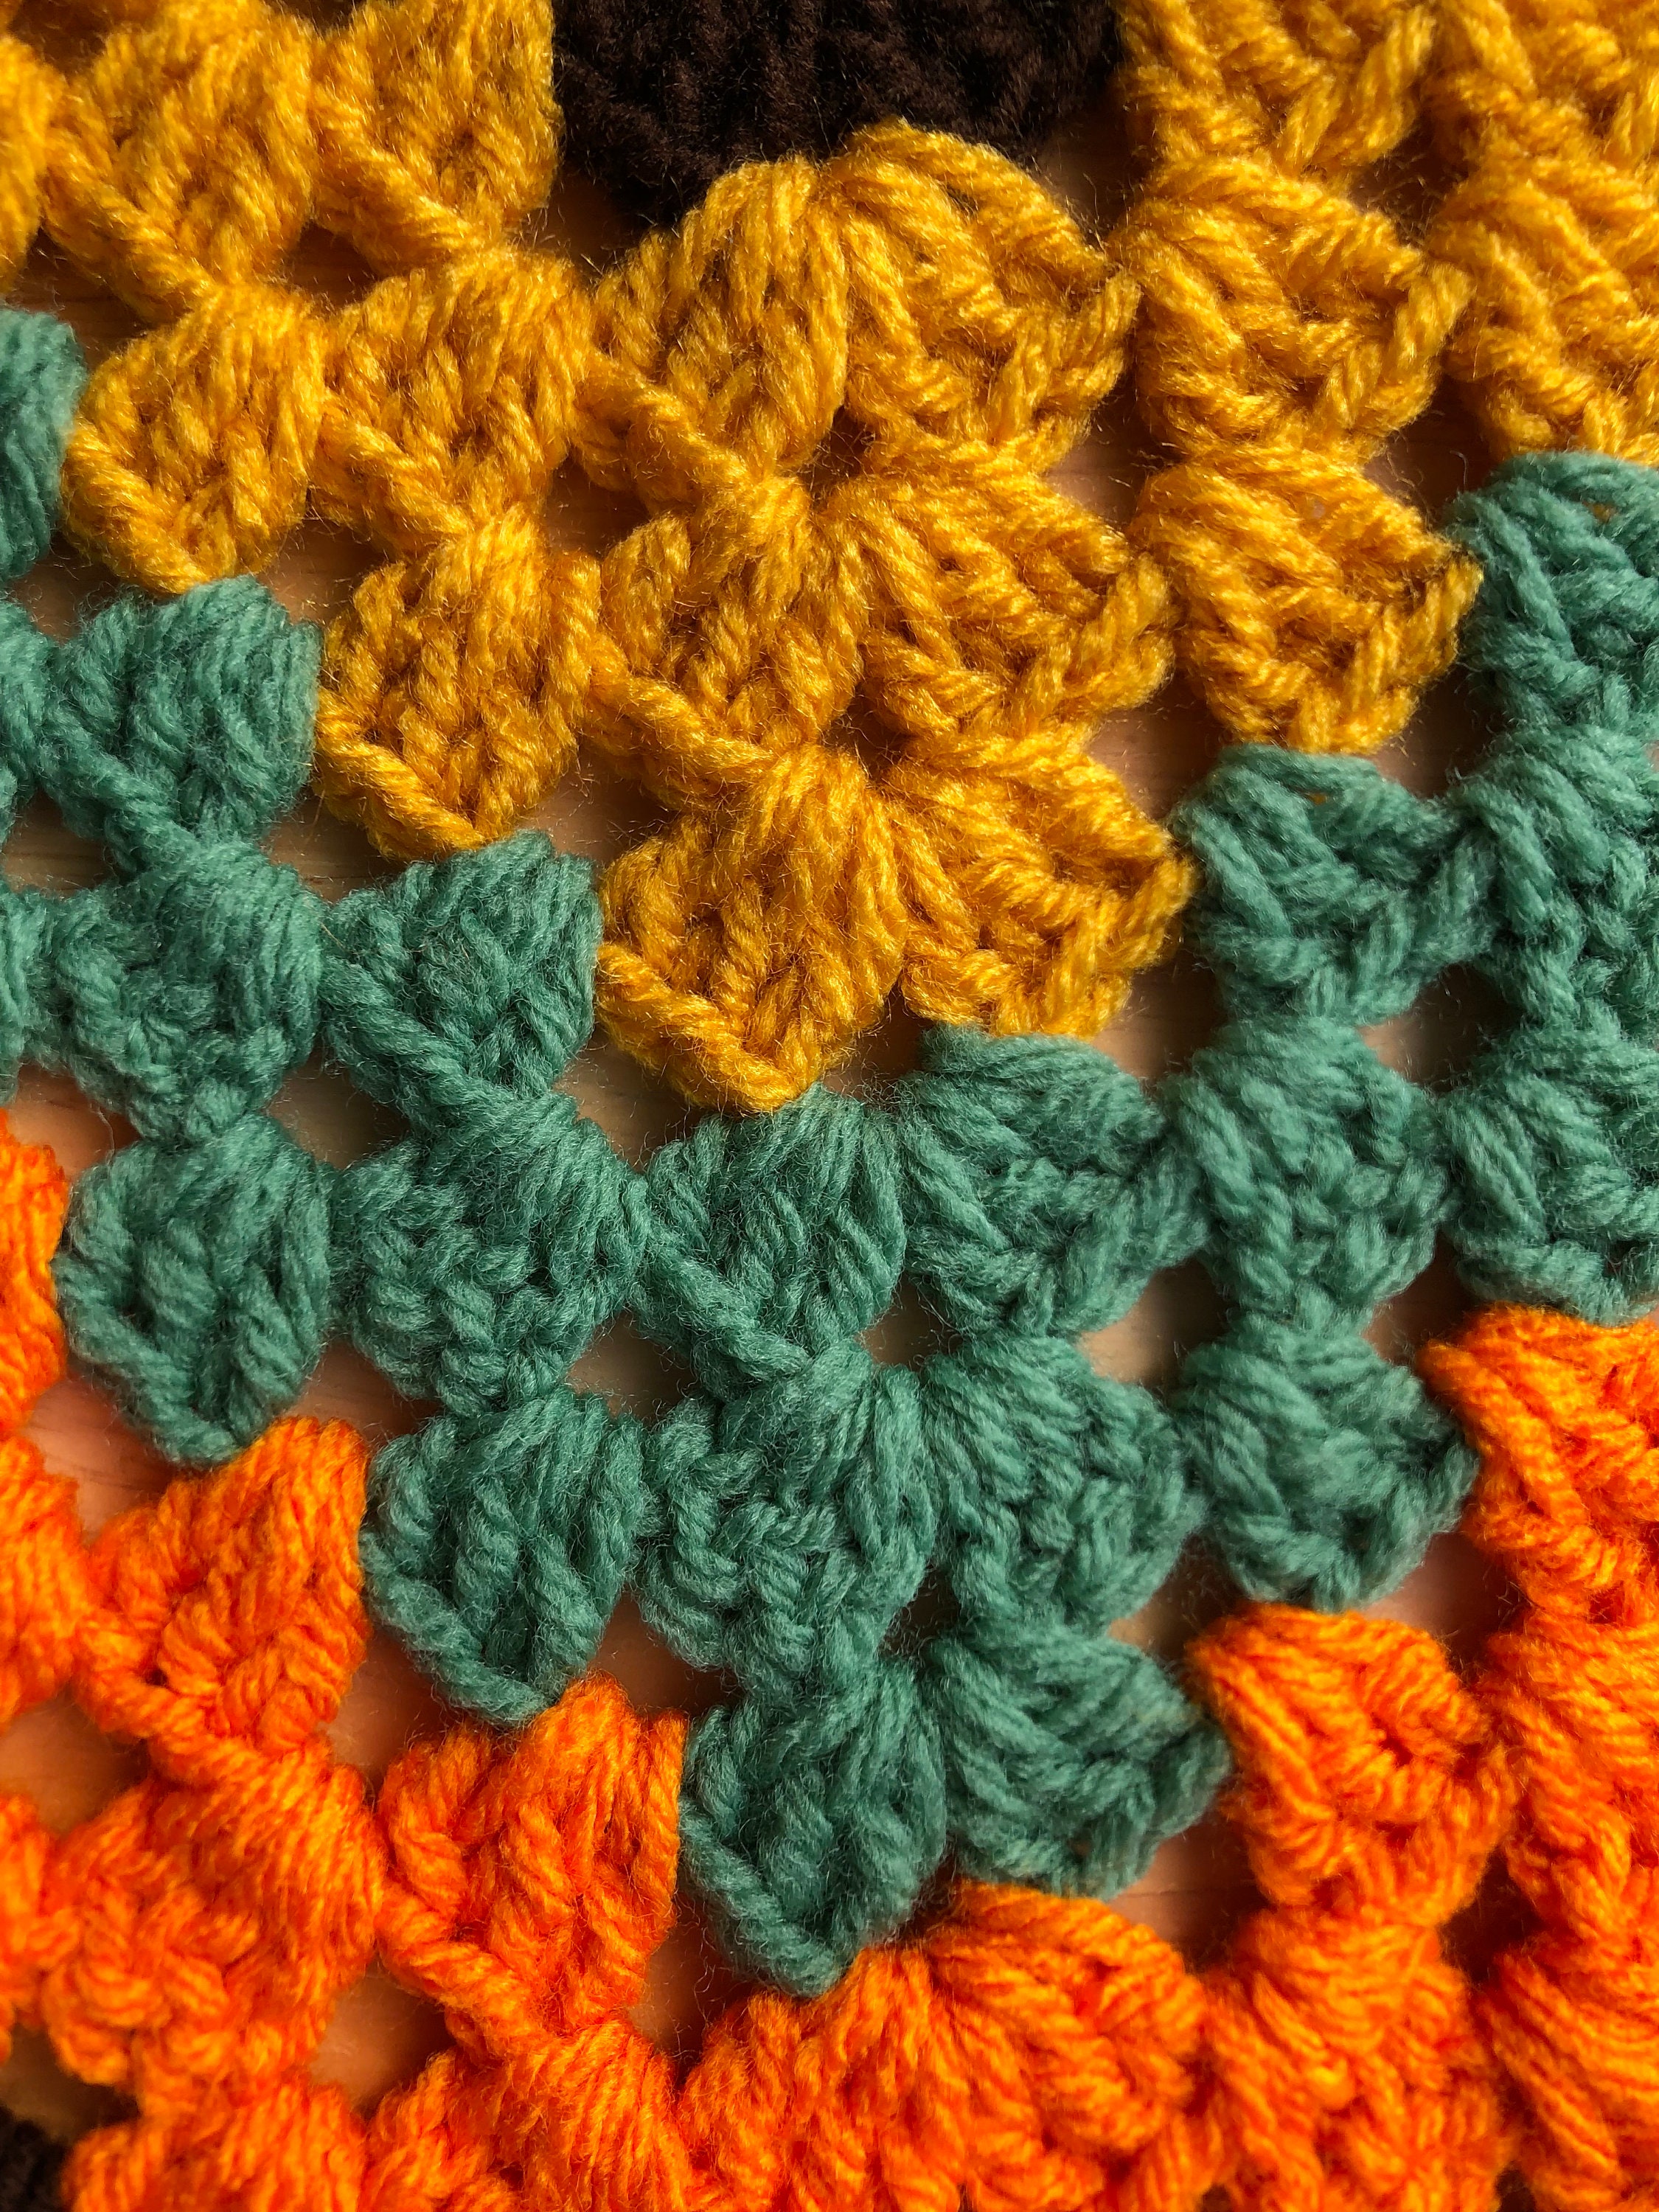 Handmade Crocheted Table Runner In Gold Orange Green And | Etsy